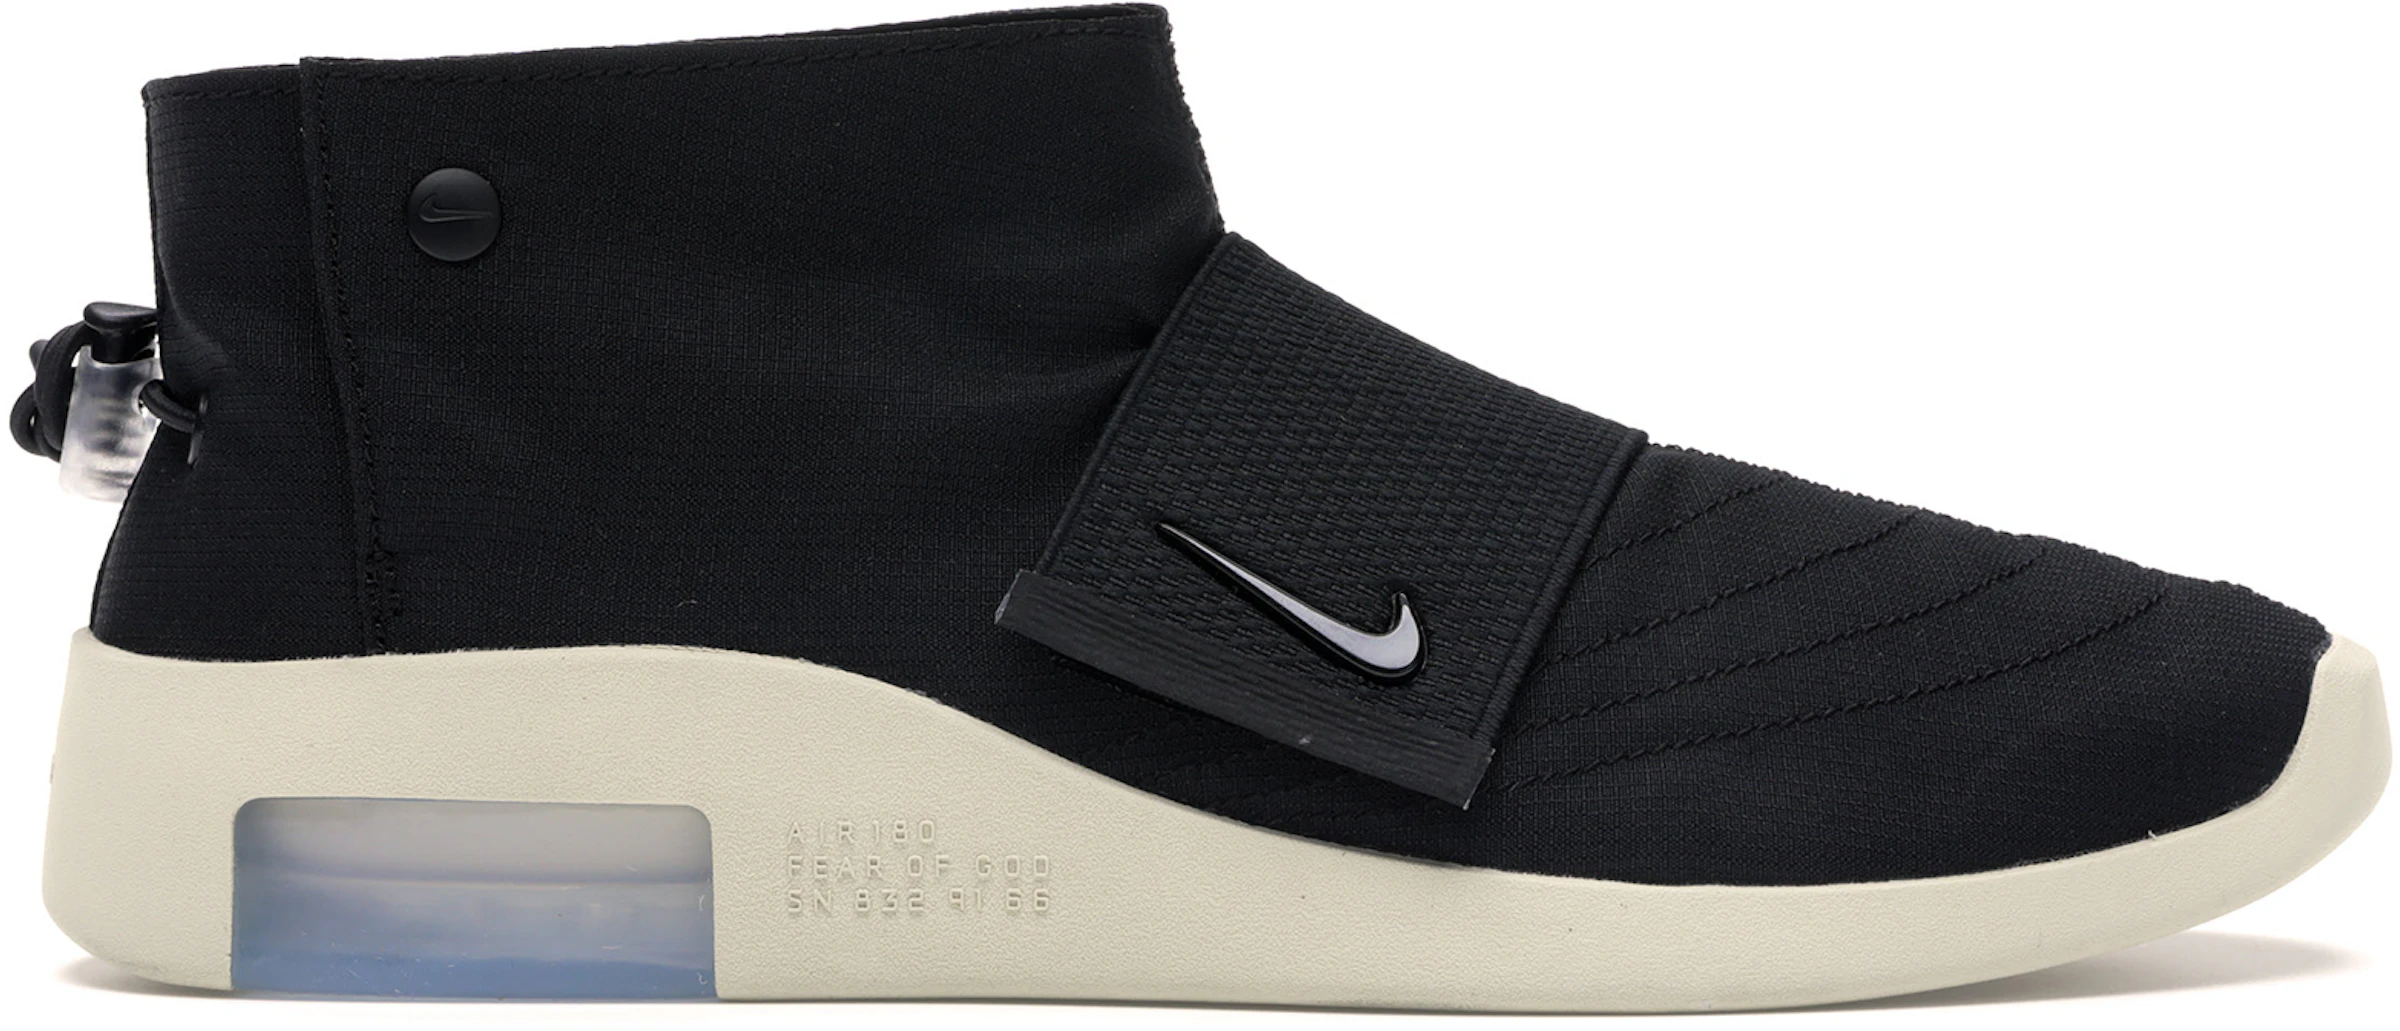 Compra Nike Fear Of God Calzado sneakers nuevos - StockX